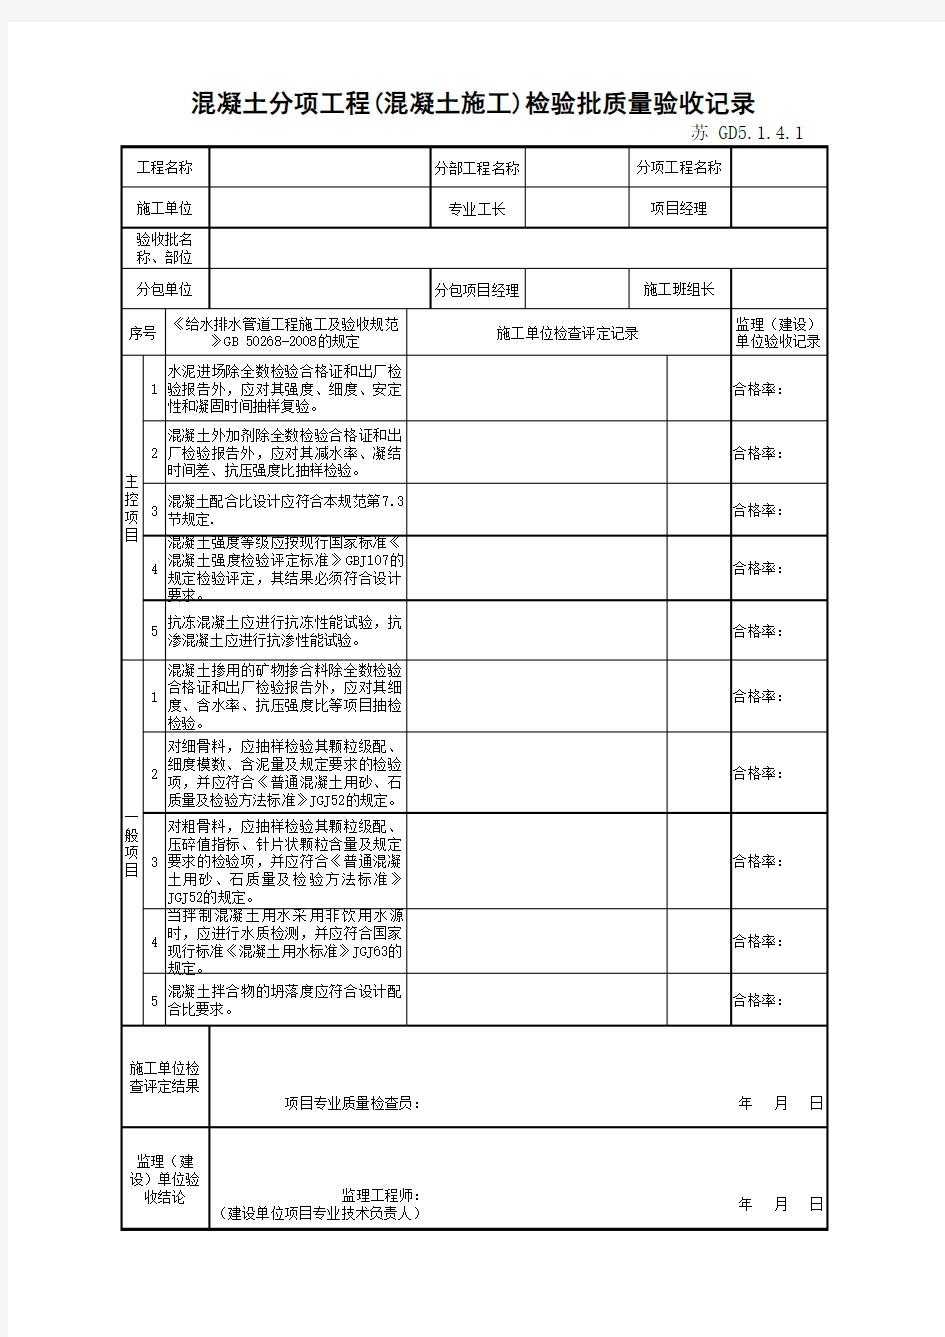 江苏省建设工程质监0190910六版表格文件GD5.1.4.1